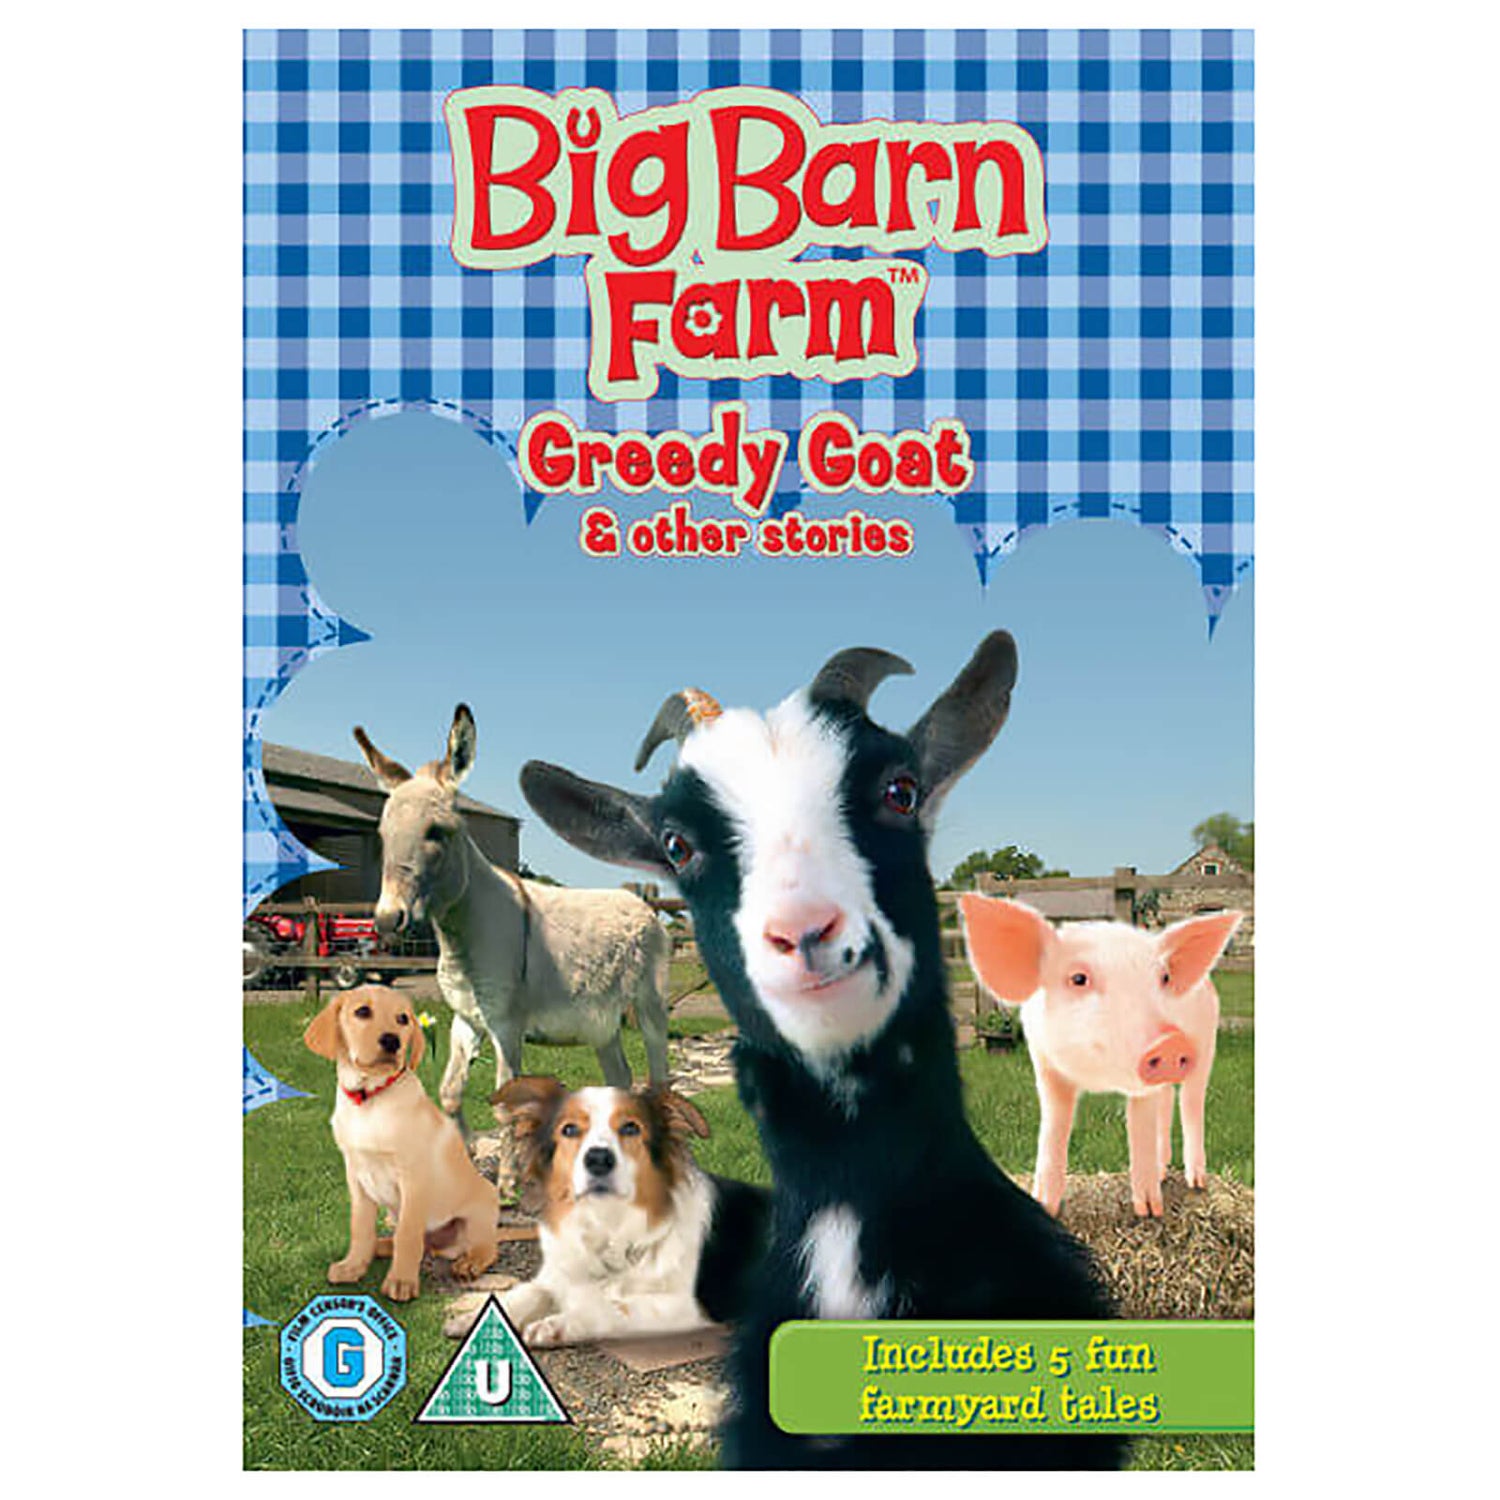 Big Barn Farm: Greedy Goat en andere verhalen